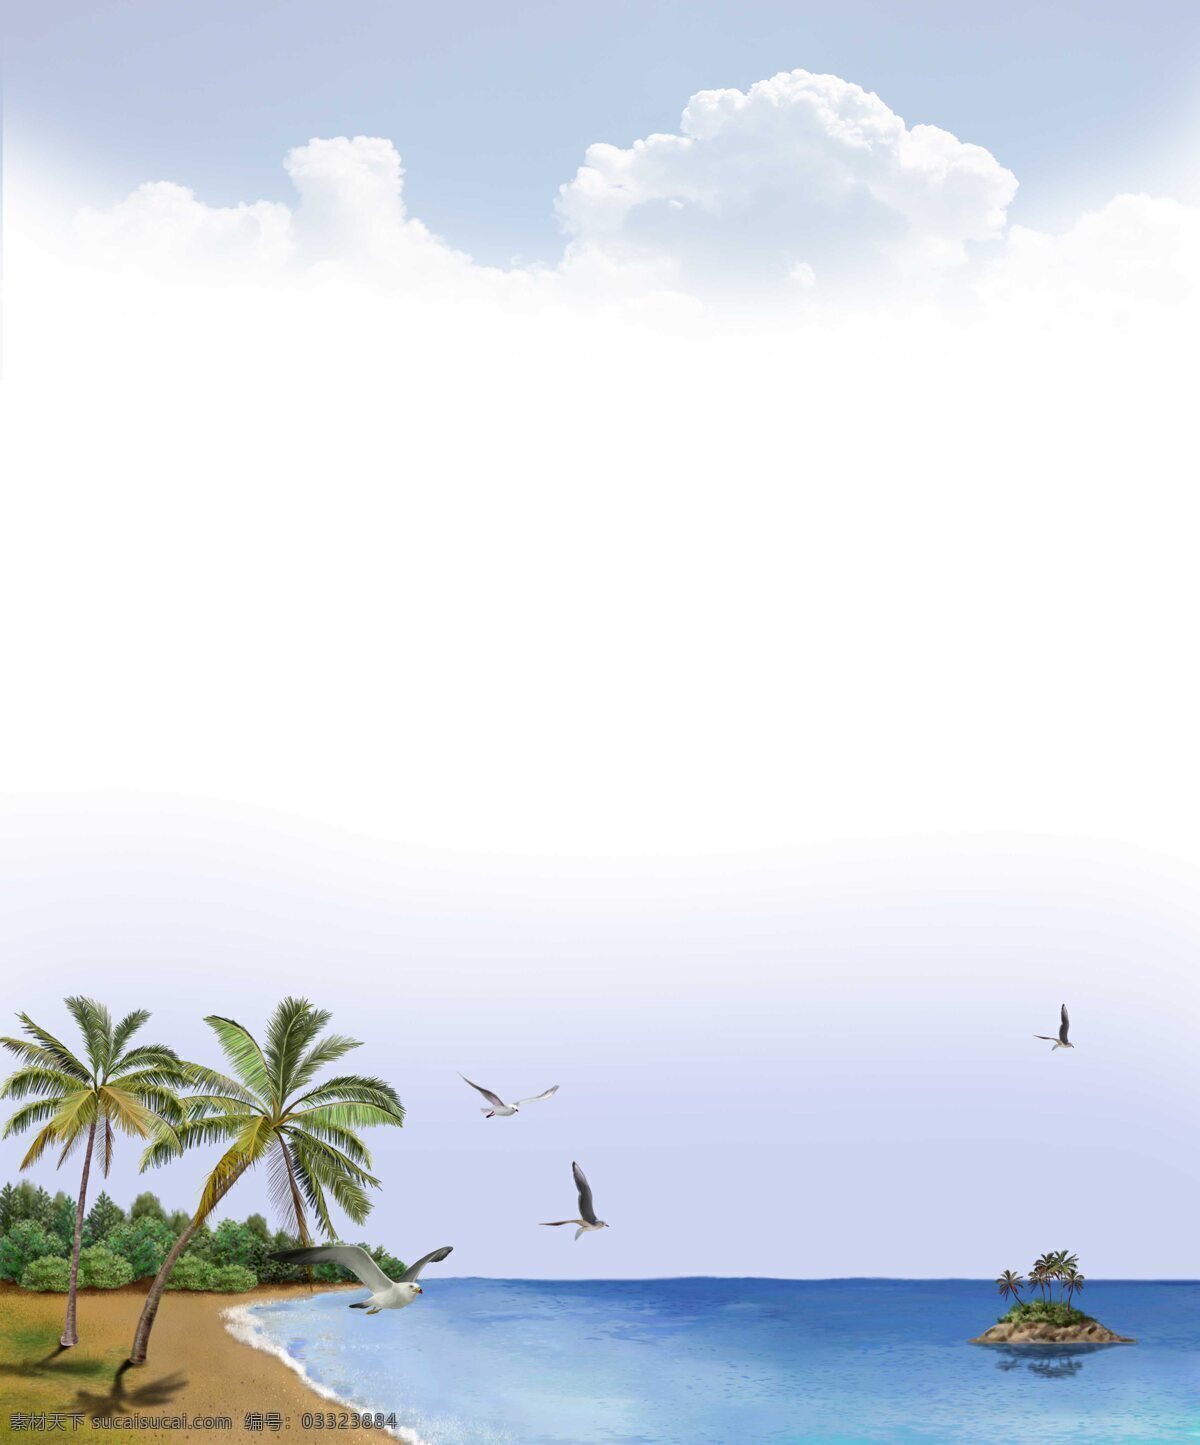 椰岛海风 移门图 椰树 岛 大海 蓝天 鸟 专业移门图库 背景底纹 底纹边框